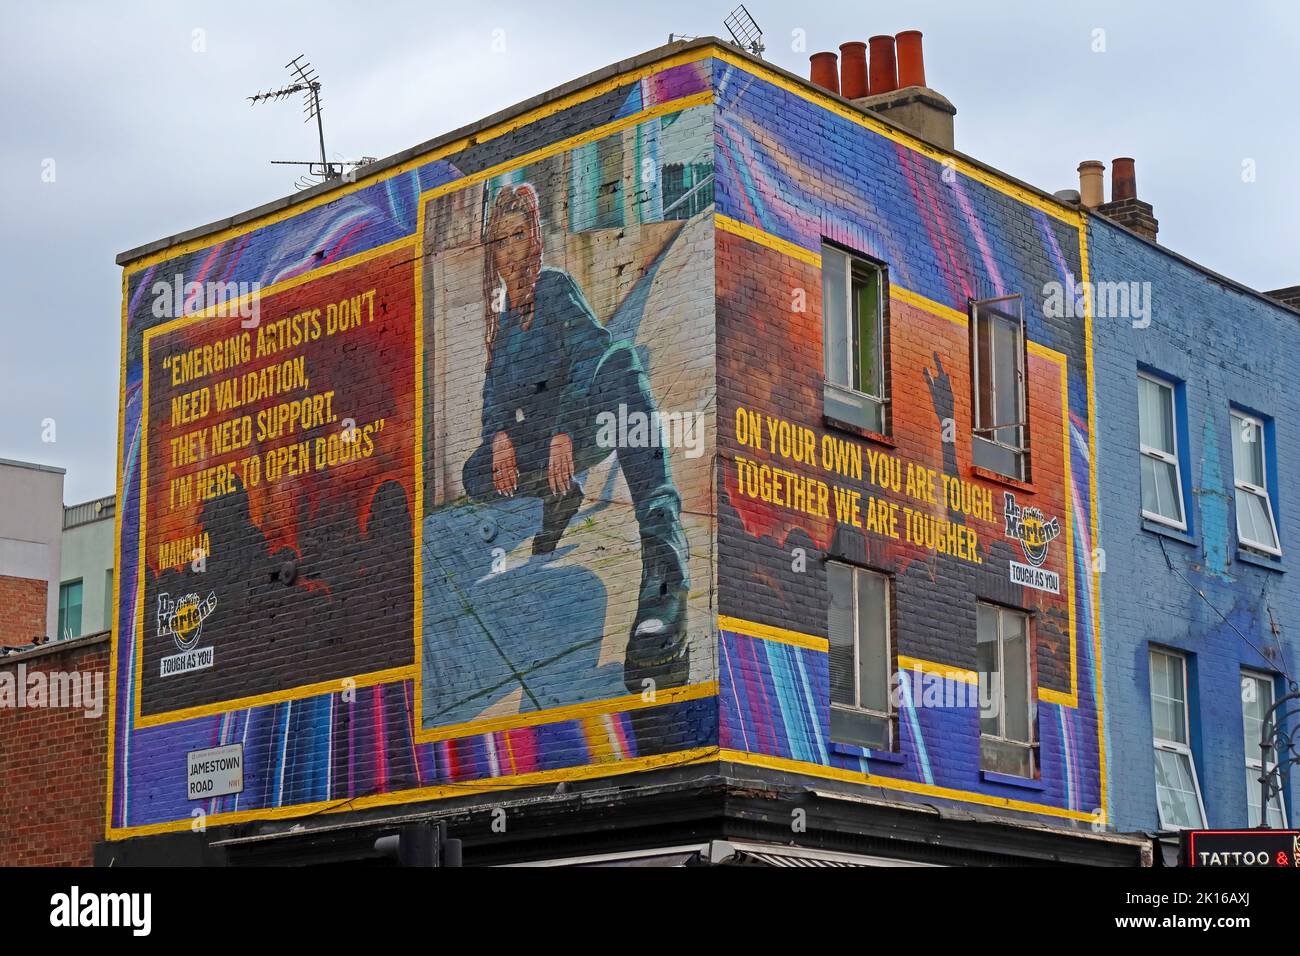 Par vous-même, vous êtes dur. Ensemble, nous sommes plus durs. Dr Martens bâtiment art mural, sur un magasin à Camden High Street, Camden Town, Londres, Angleterre, Royaume-Uni, NW1 Banque D'Images